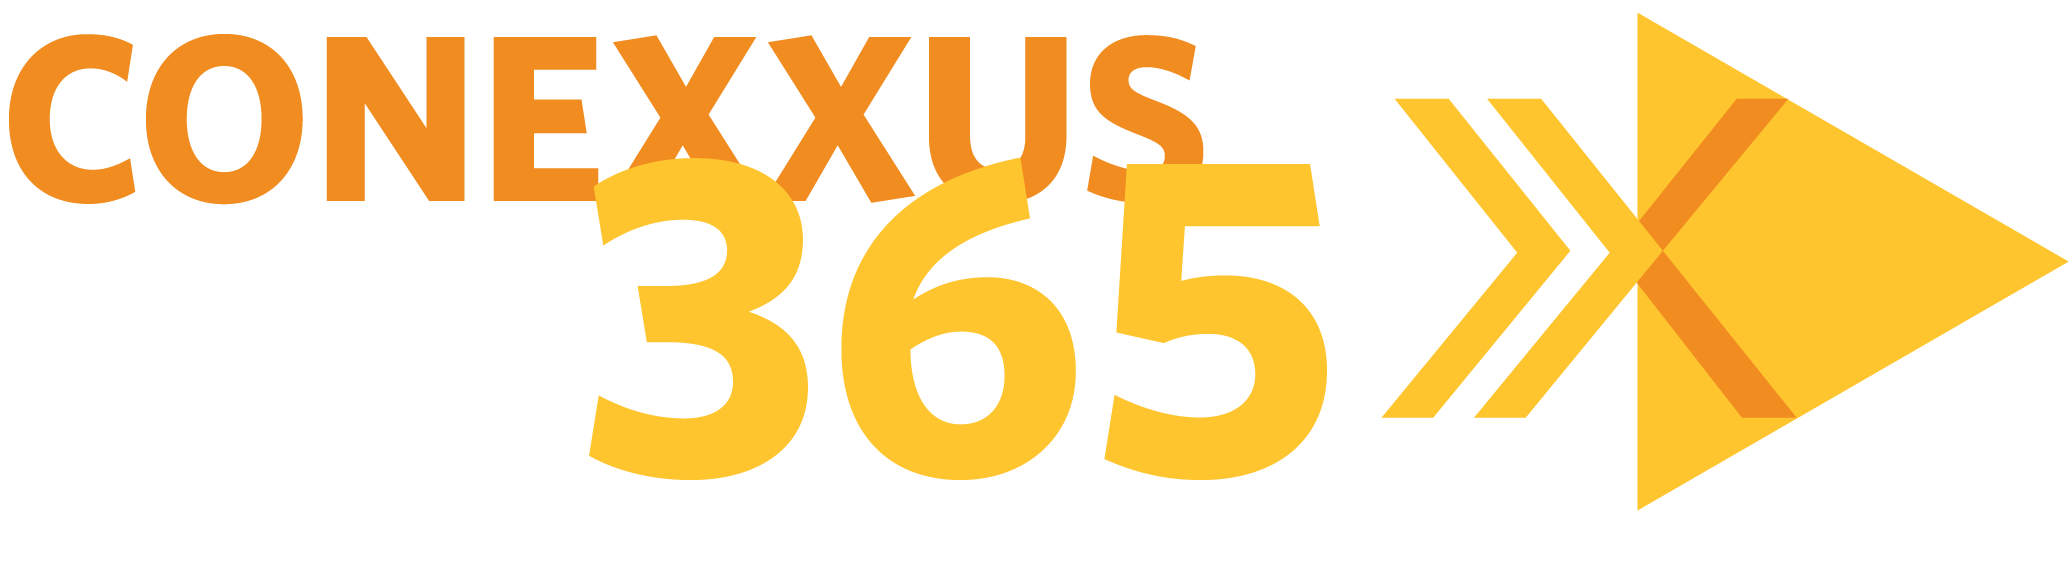 Conexxus365 Logo